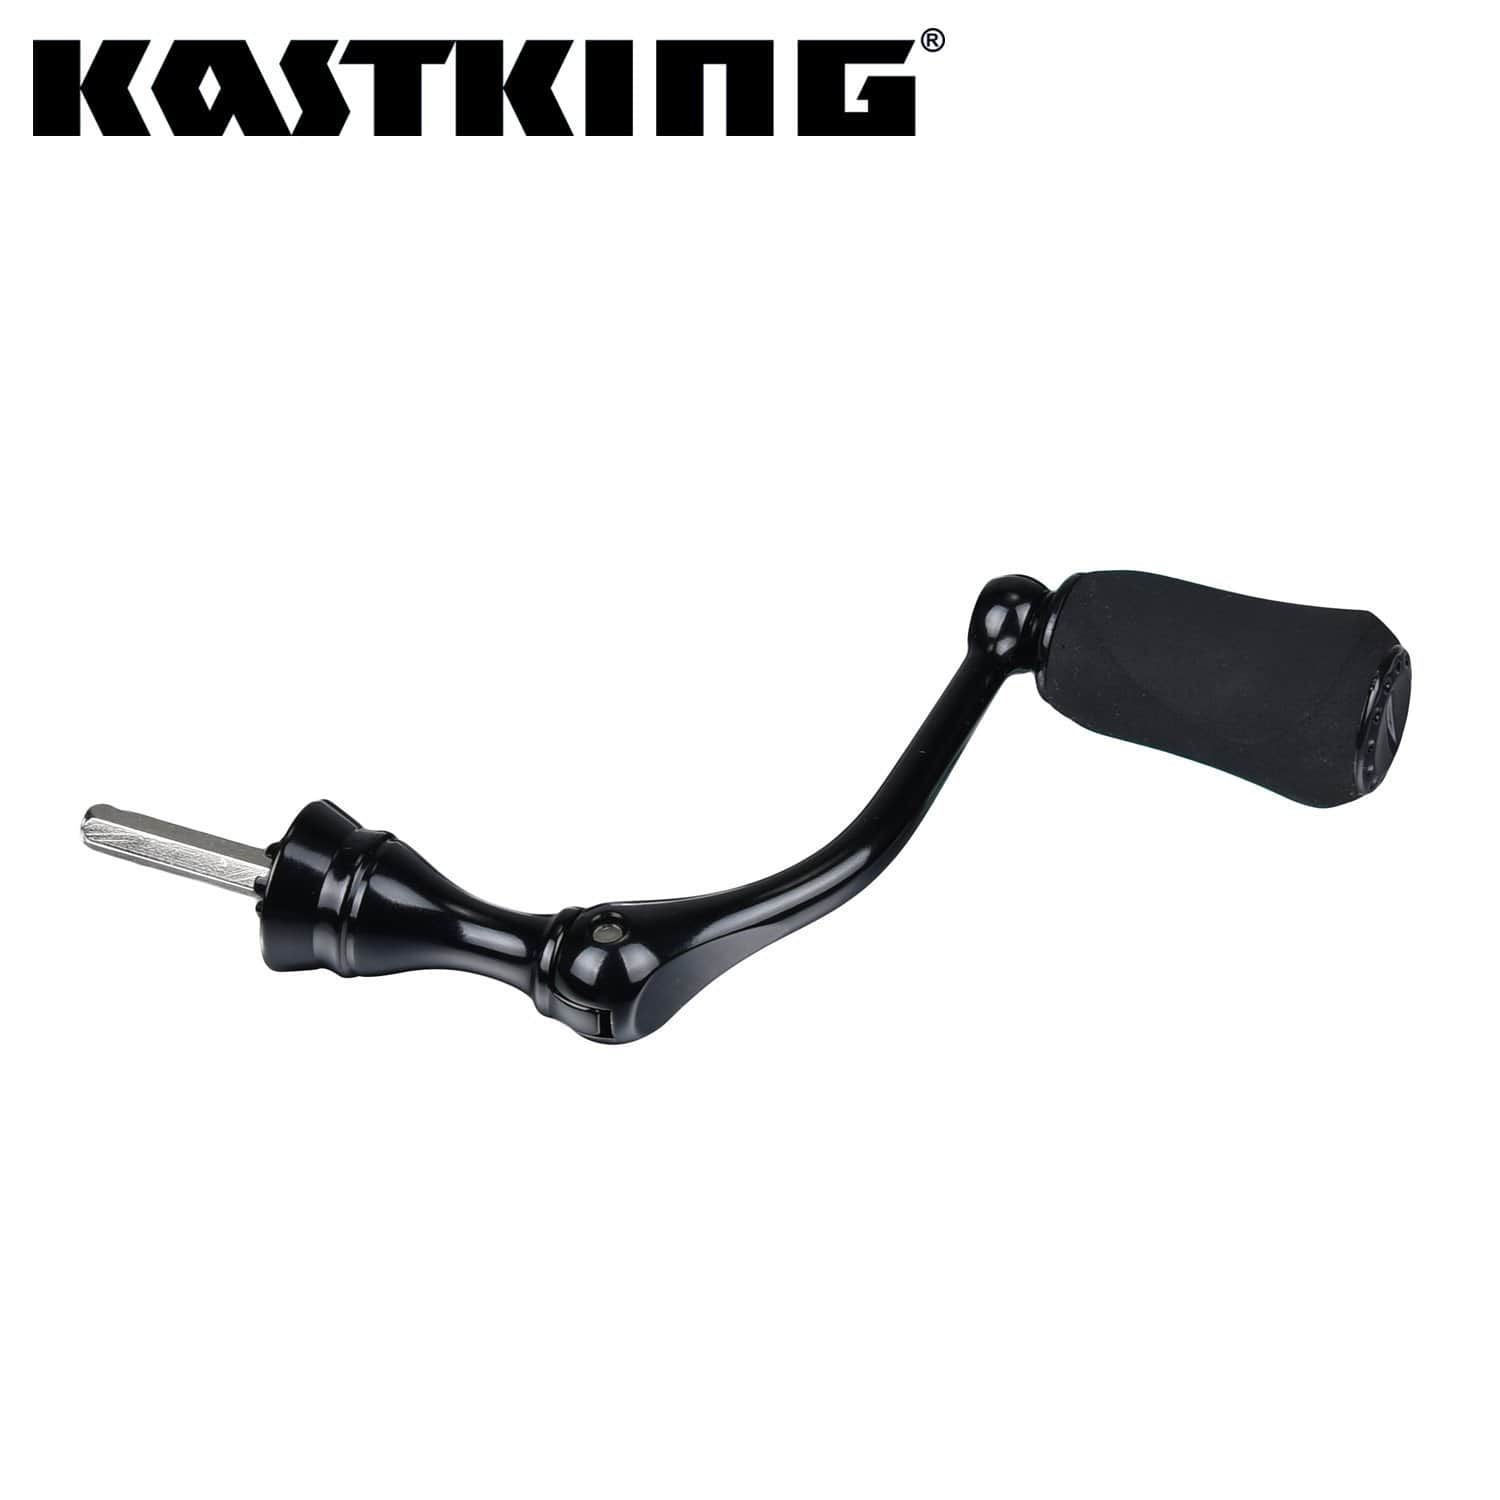 Buy Kastking Spool online